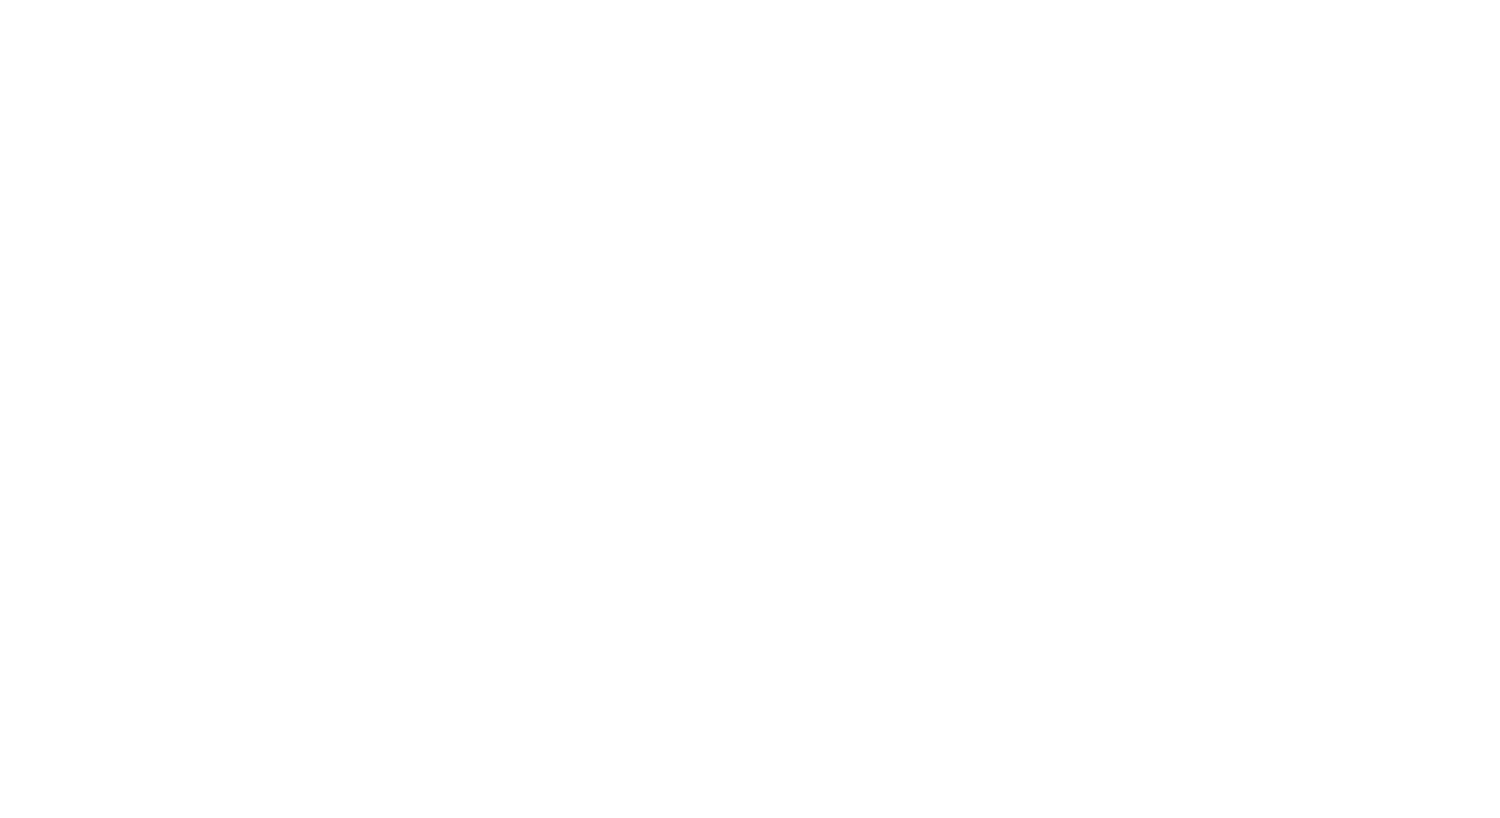 Valhi logo large for dark backgrounds (transparent PNG)